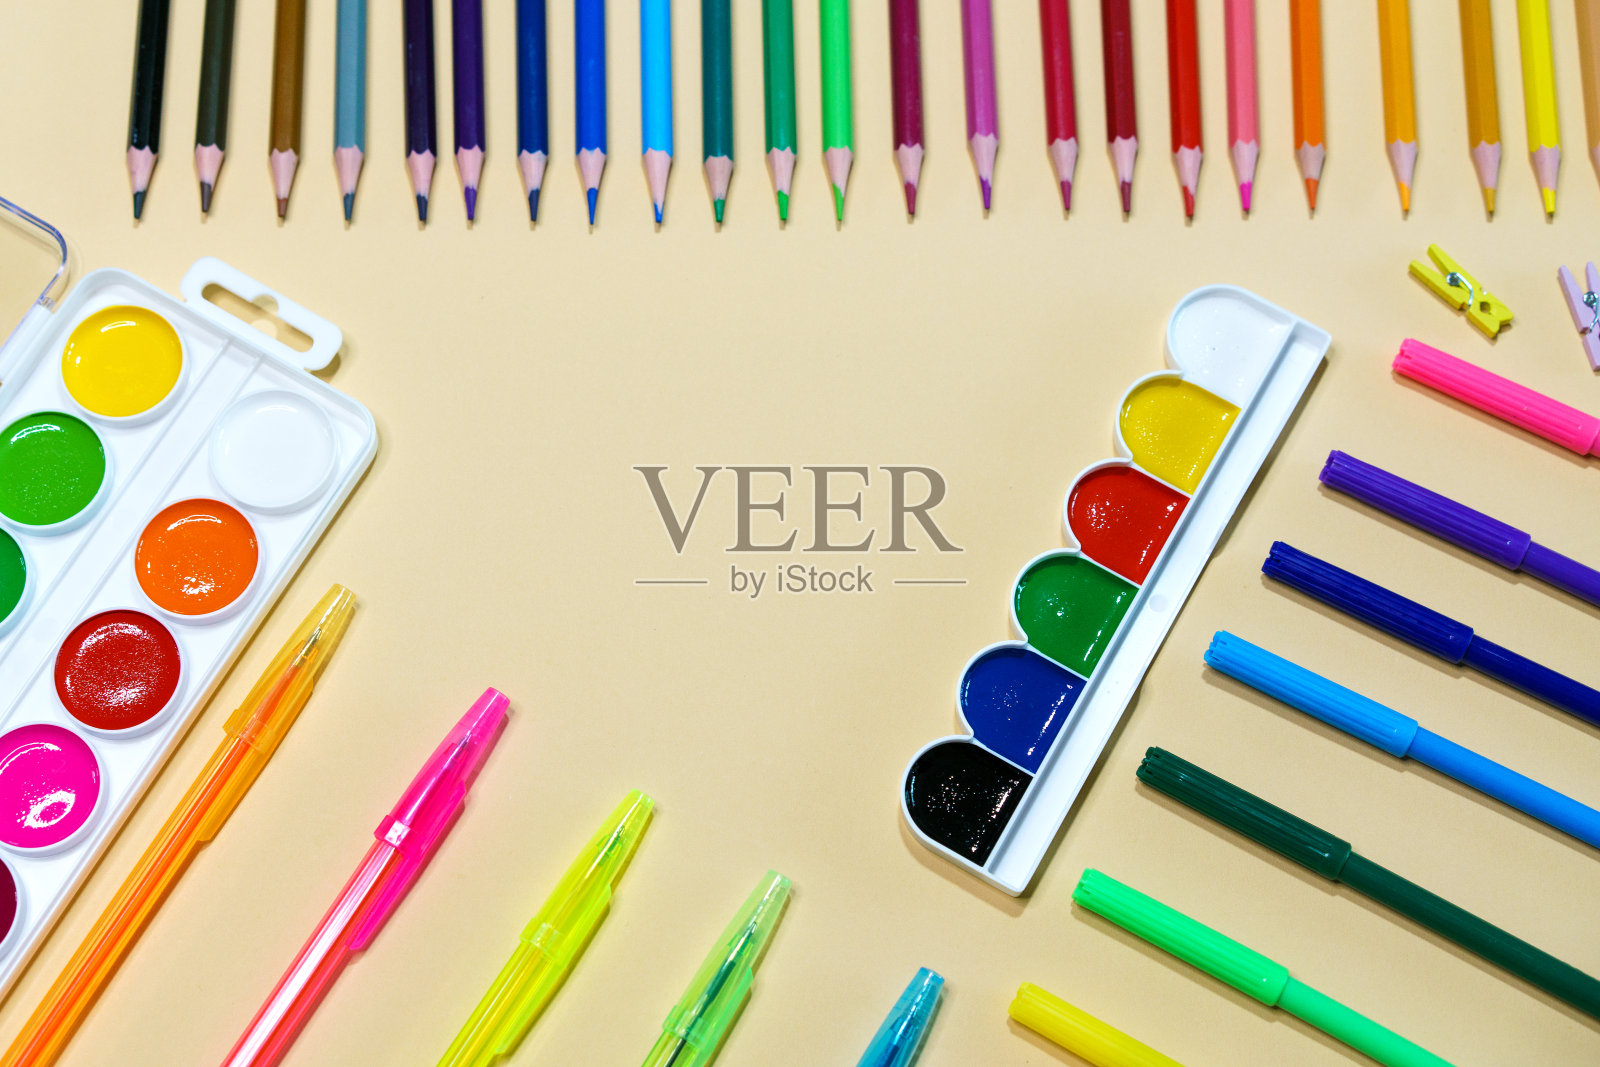 彩笔和彩色铅笔是一种绘画棒。超过12种颜色照片摄影图片